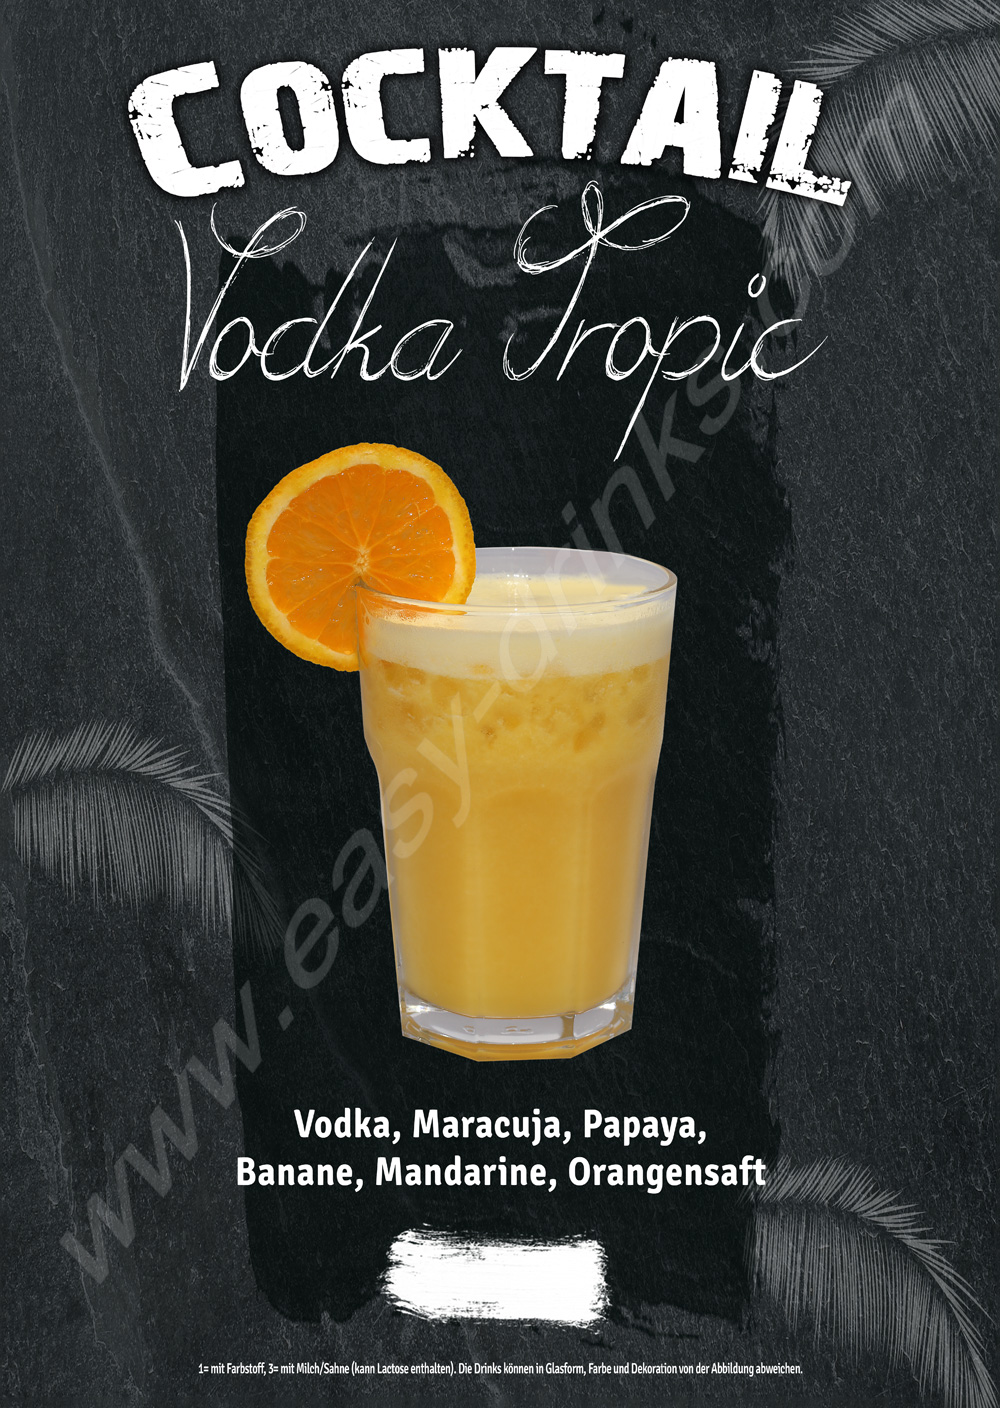 Vodka Tropic / Fertigcocktail / 28% Vol. 0,7 ltr. / easy drinks